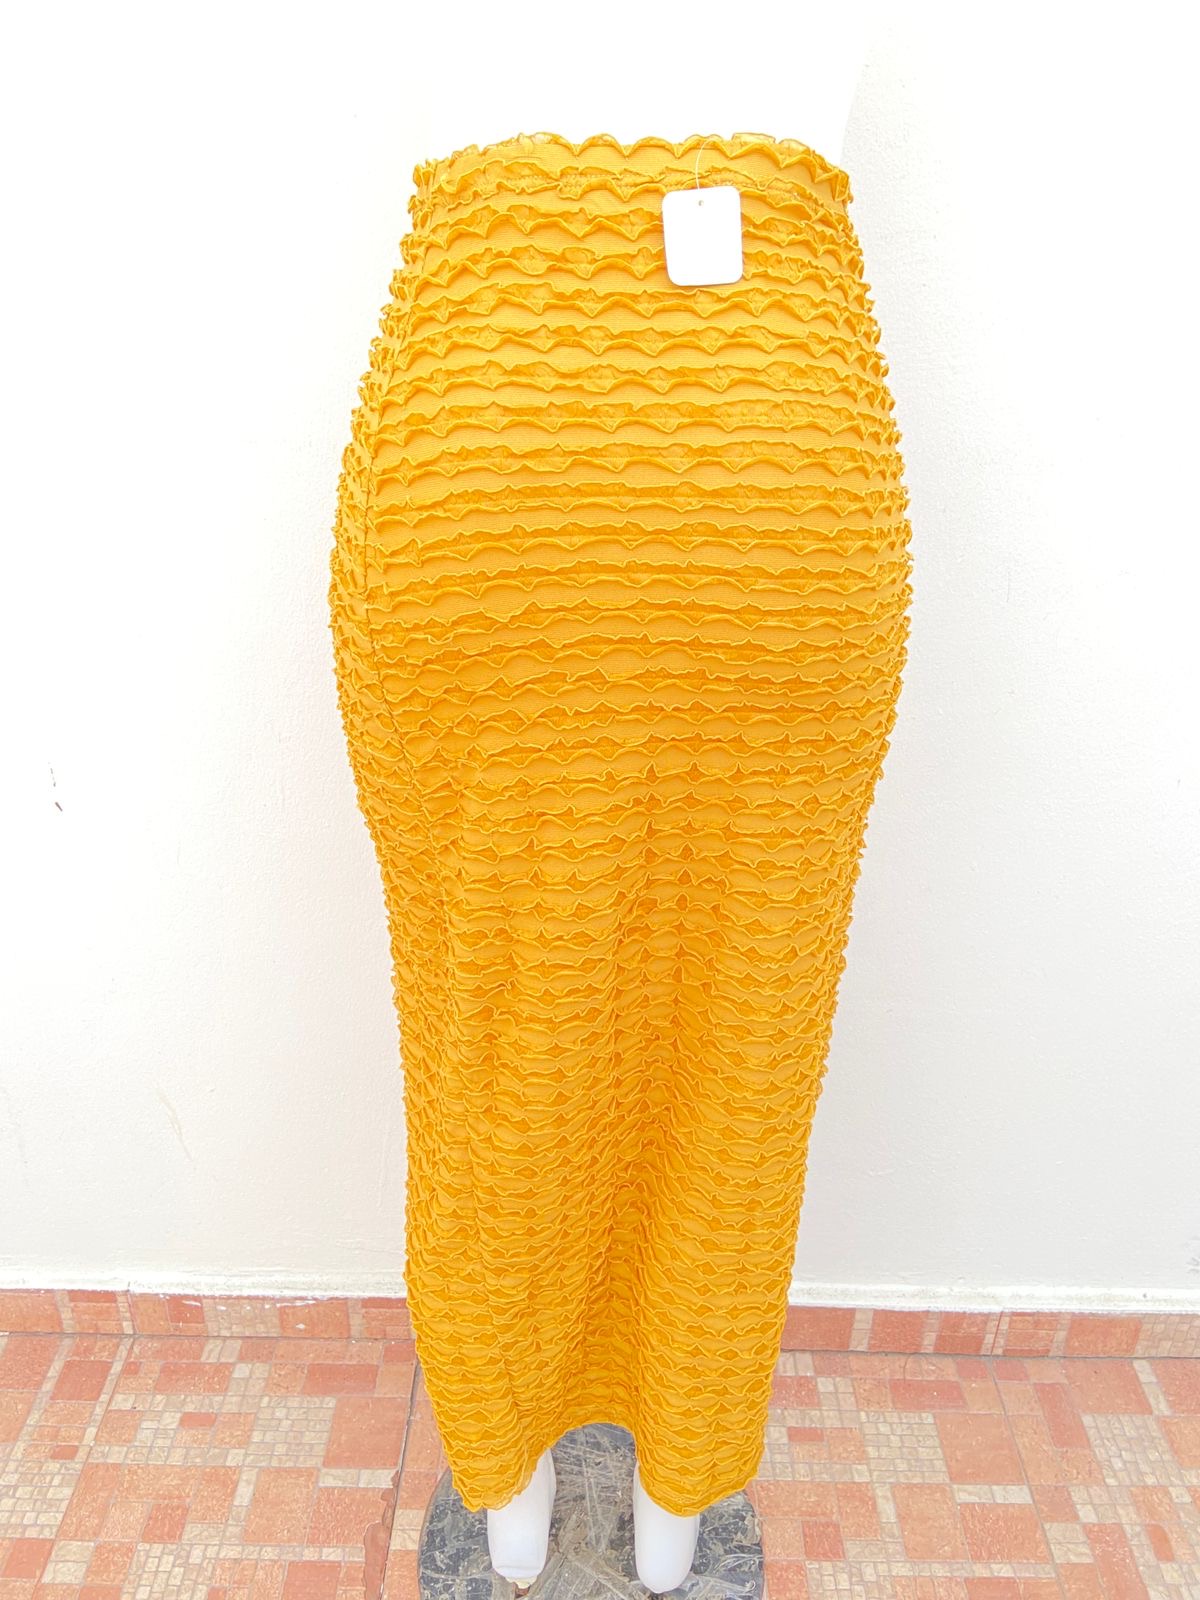 Falda Fashion Nova Original, en color amarillo mostaza y abertura y detalles de rosa.